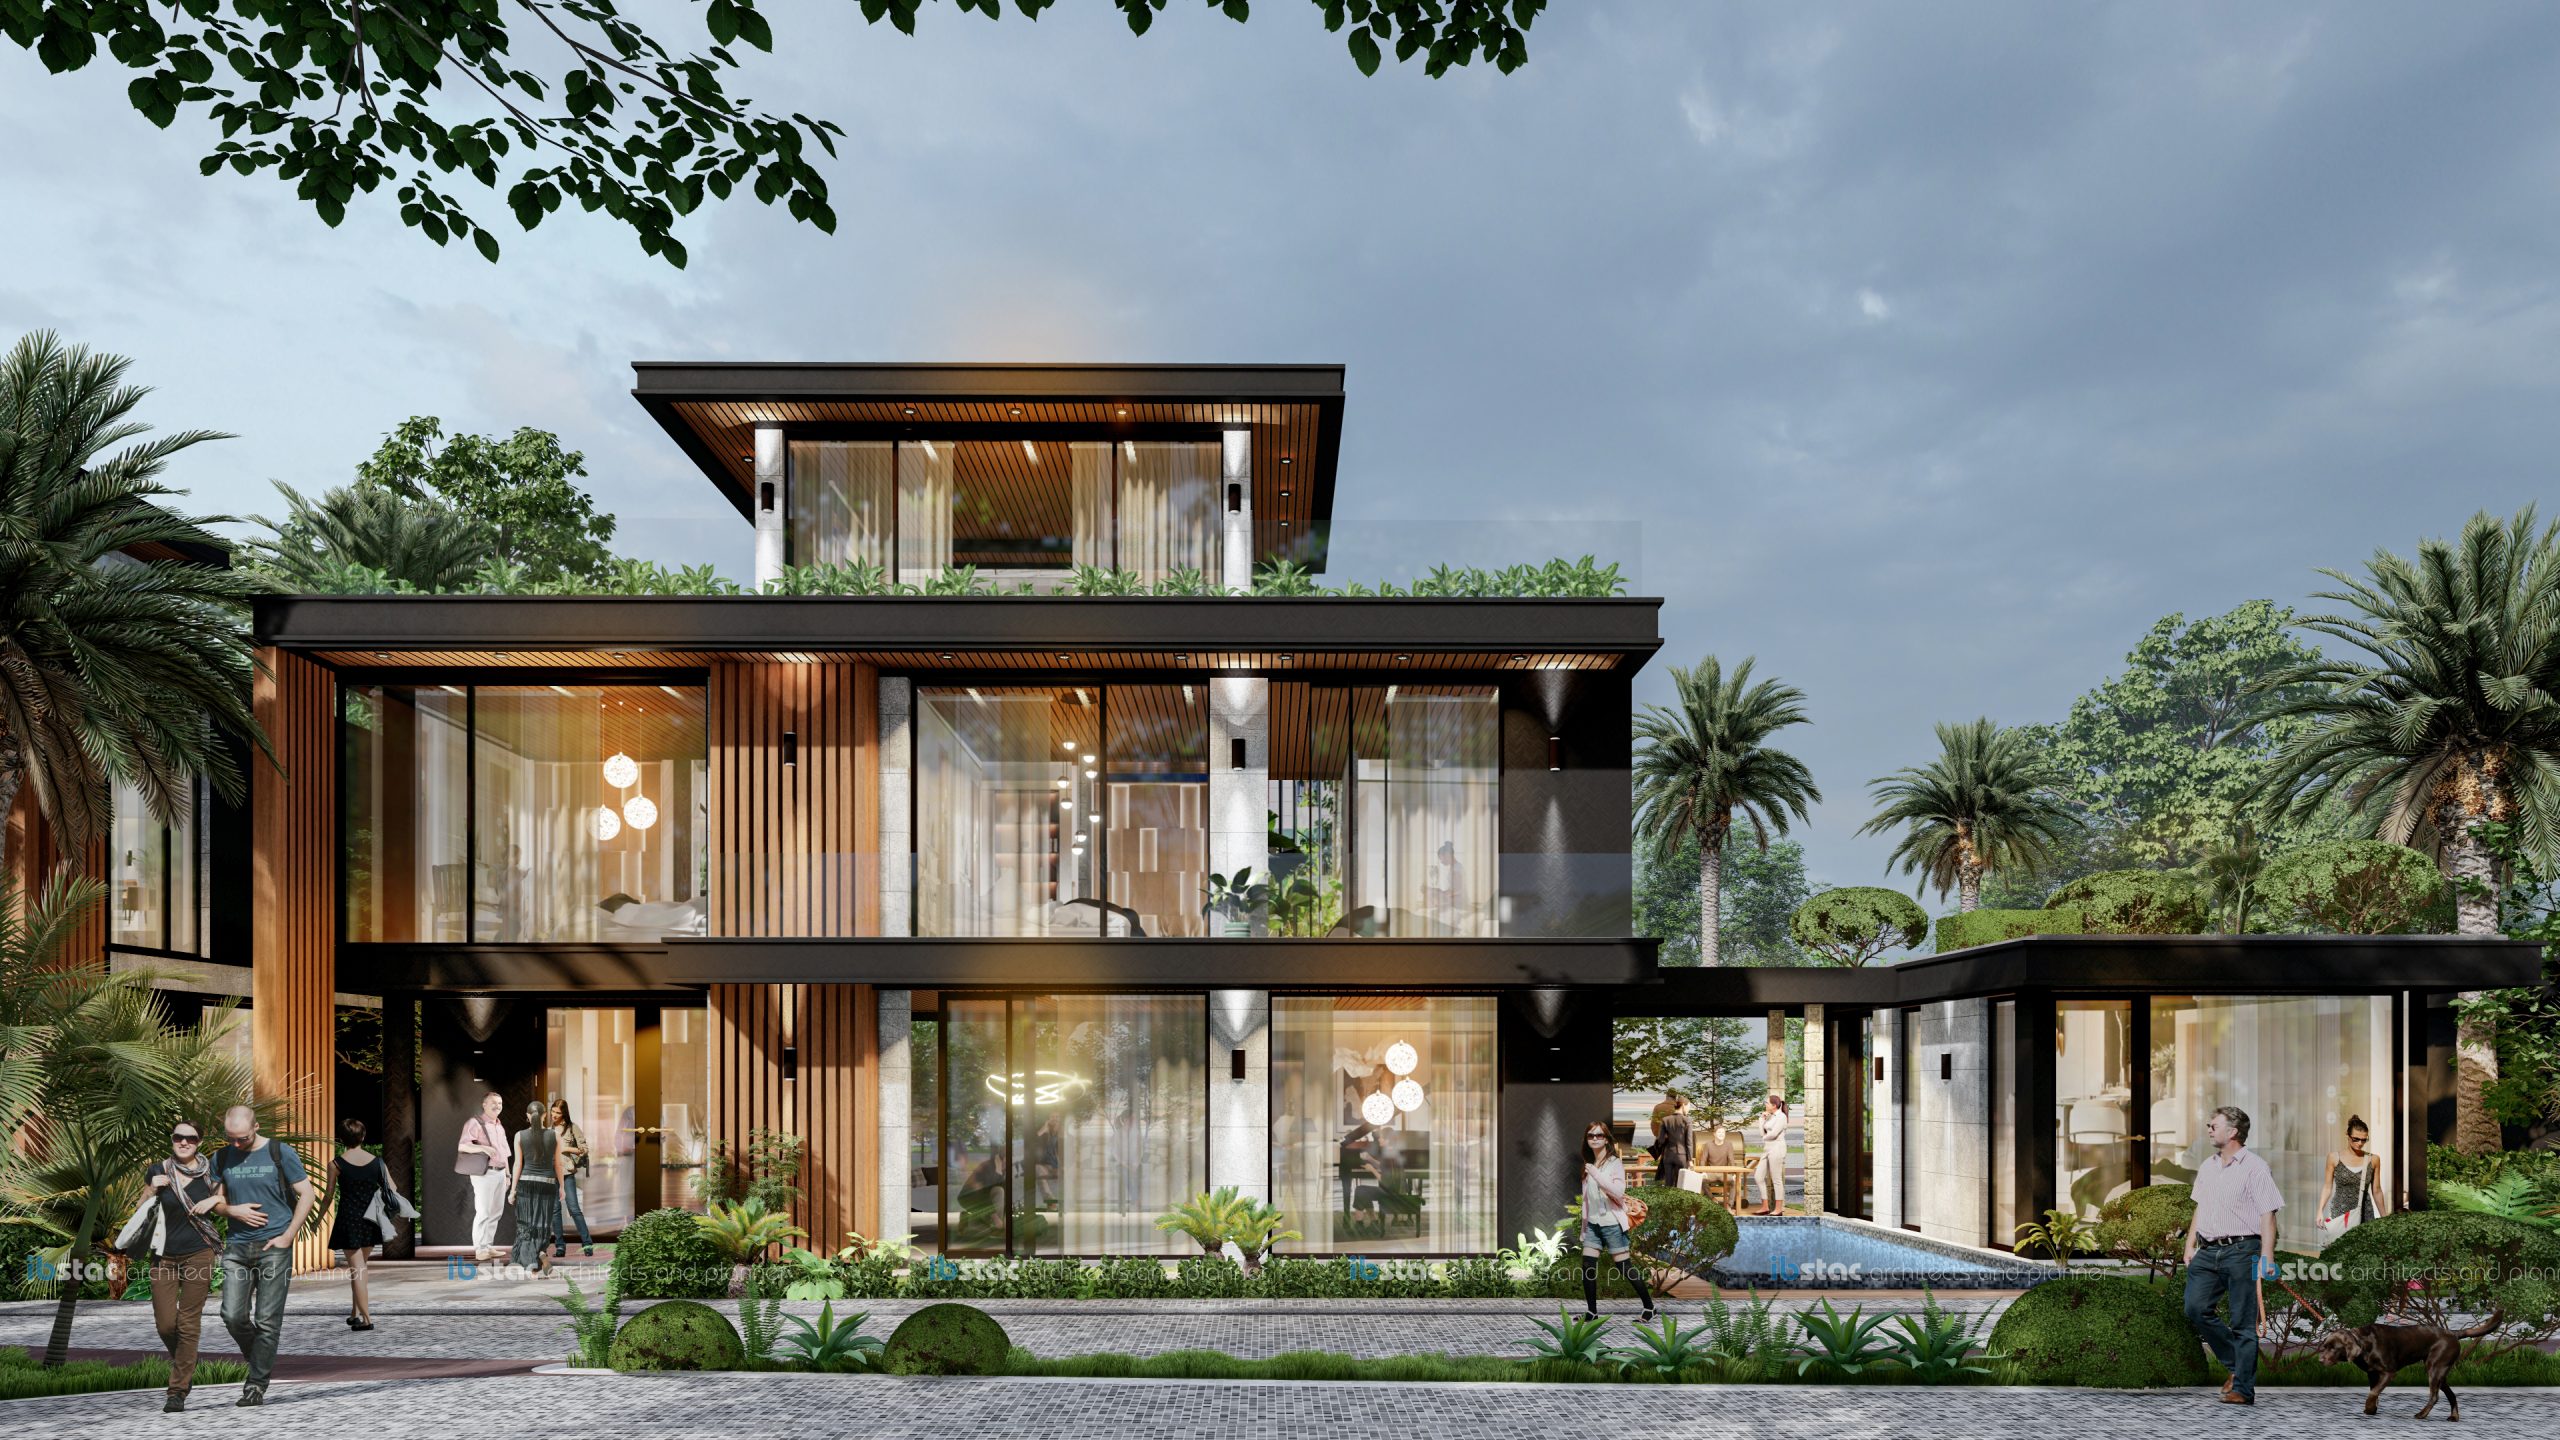 Ibstac thiết kế khu villa Viêm Đông Resort & Villa